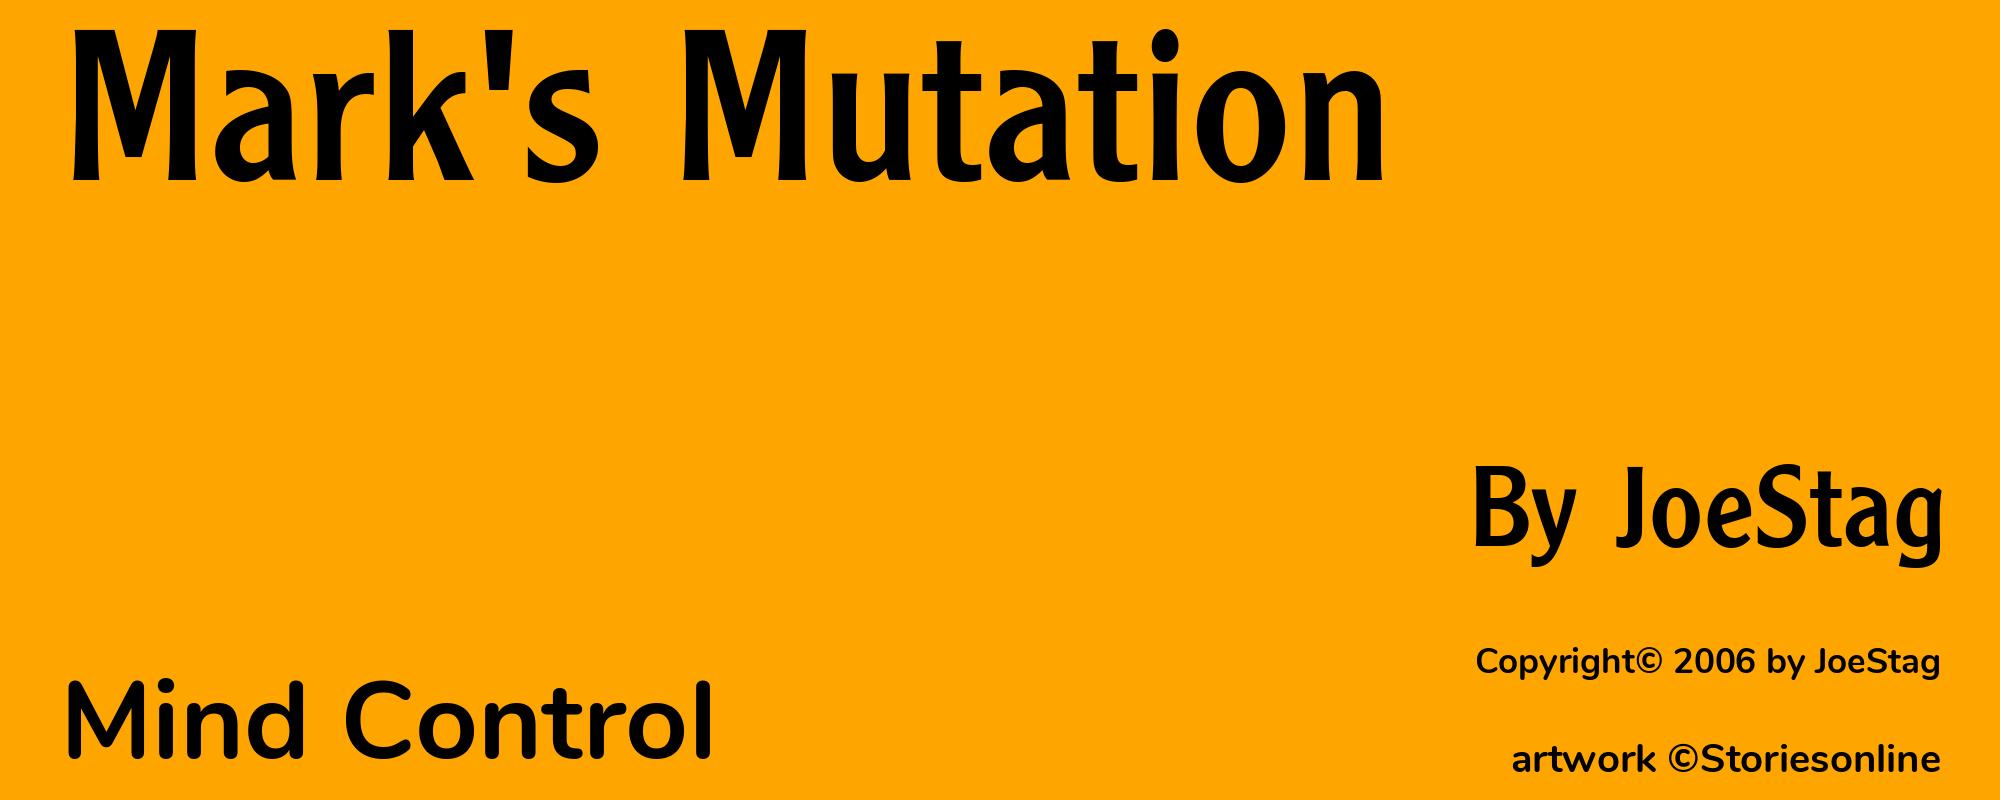 Mark's Mutation - Cover